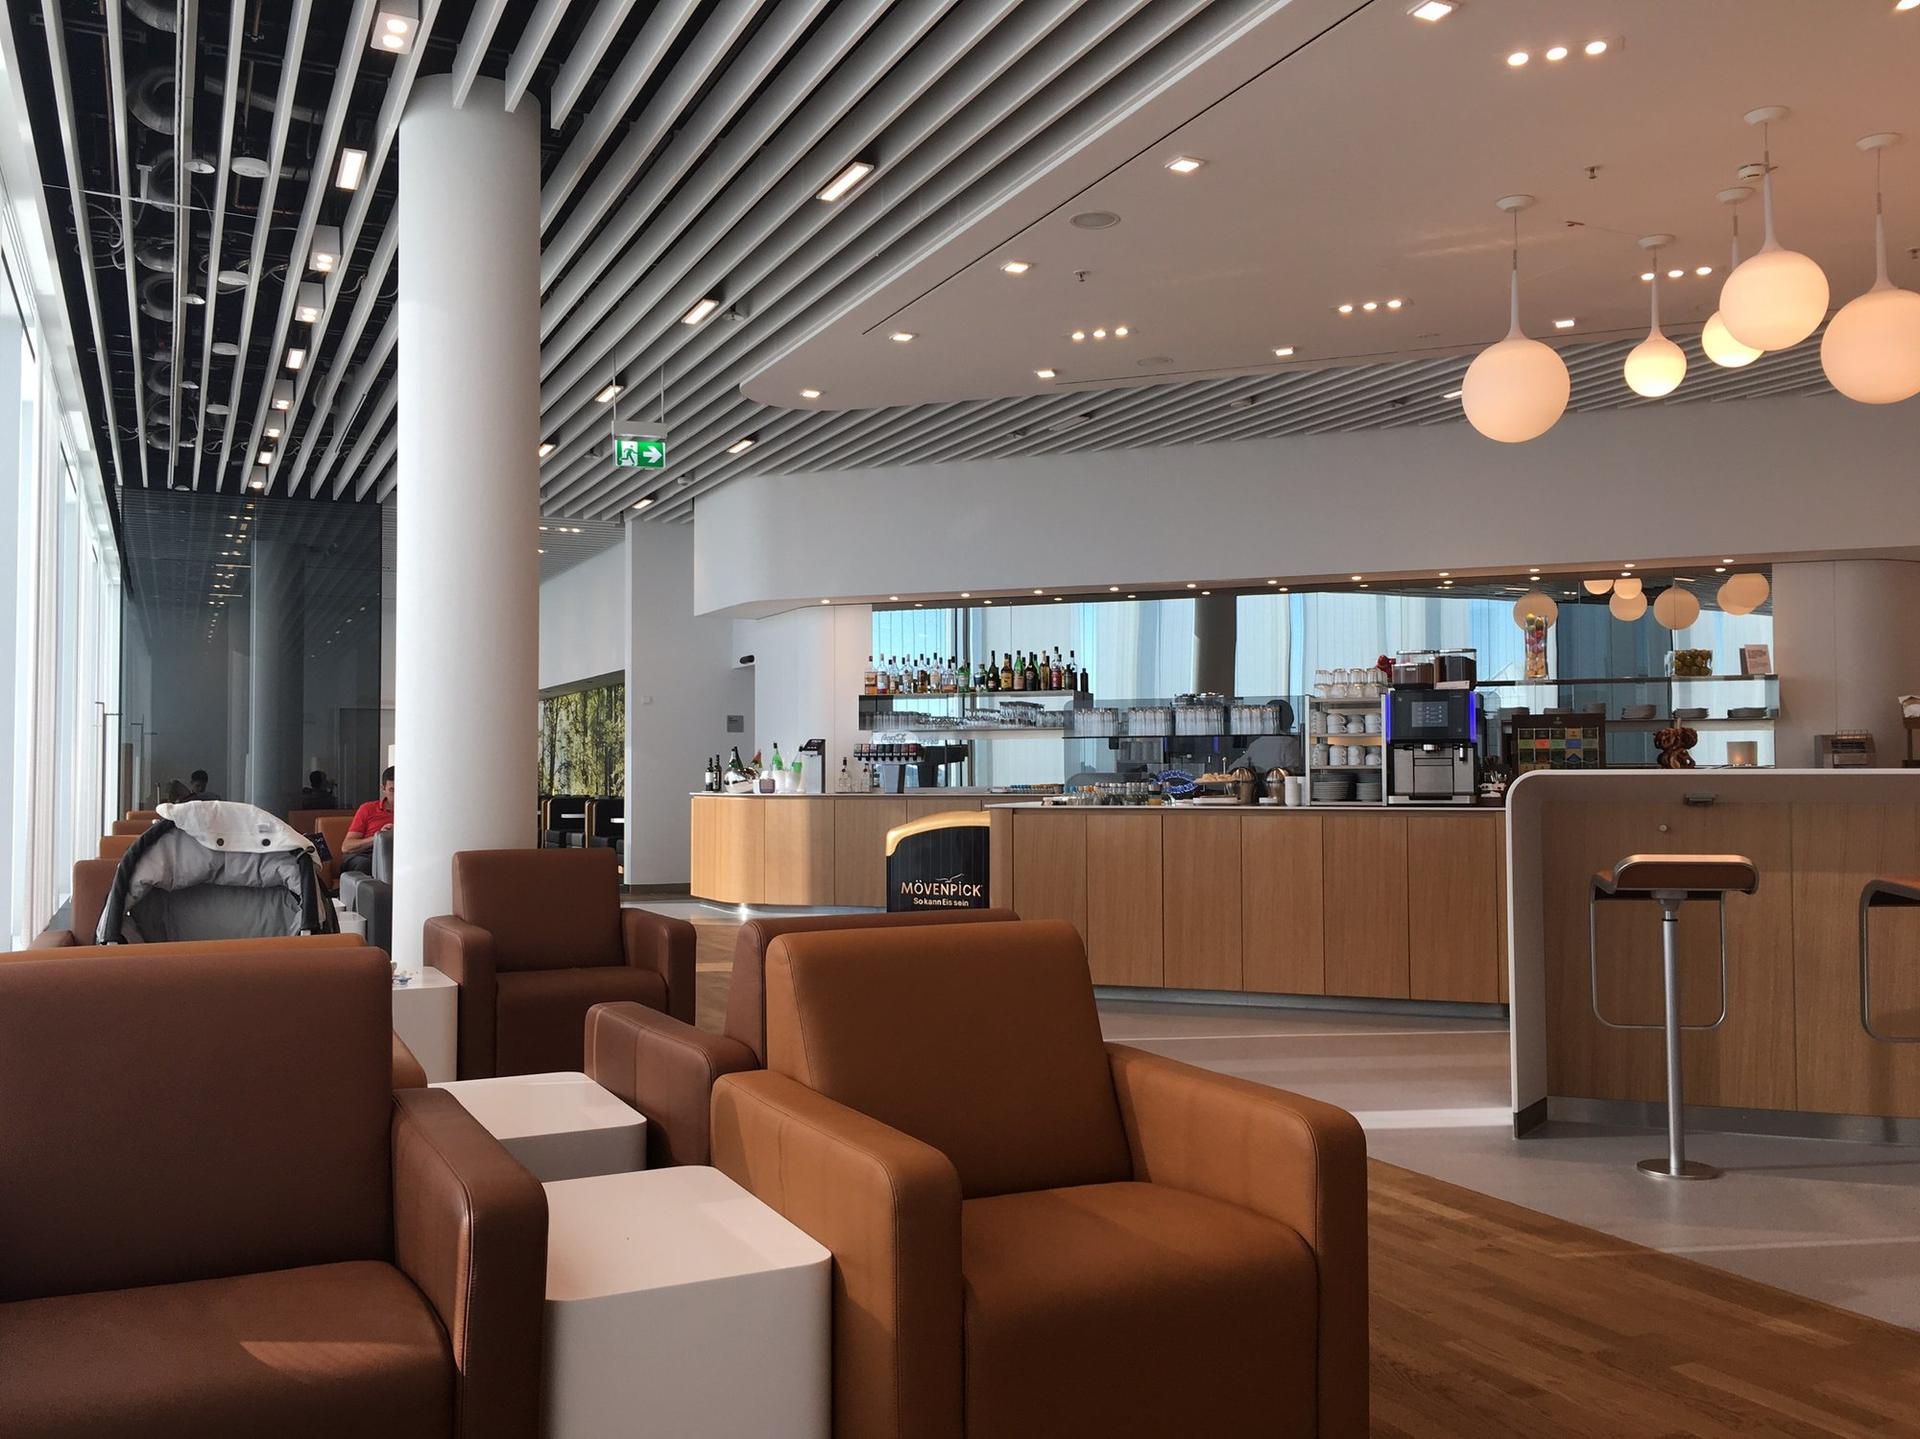 Lufthansa Senator Lounge (Schengen) image 3 of 7